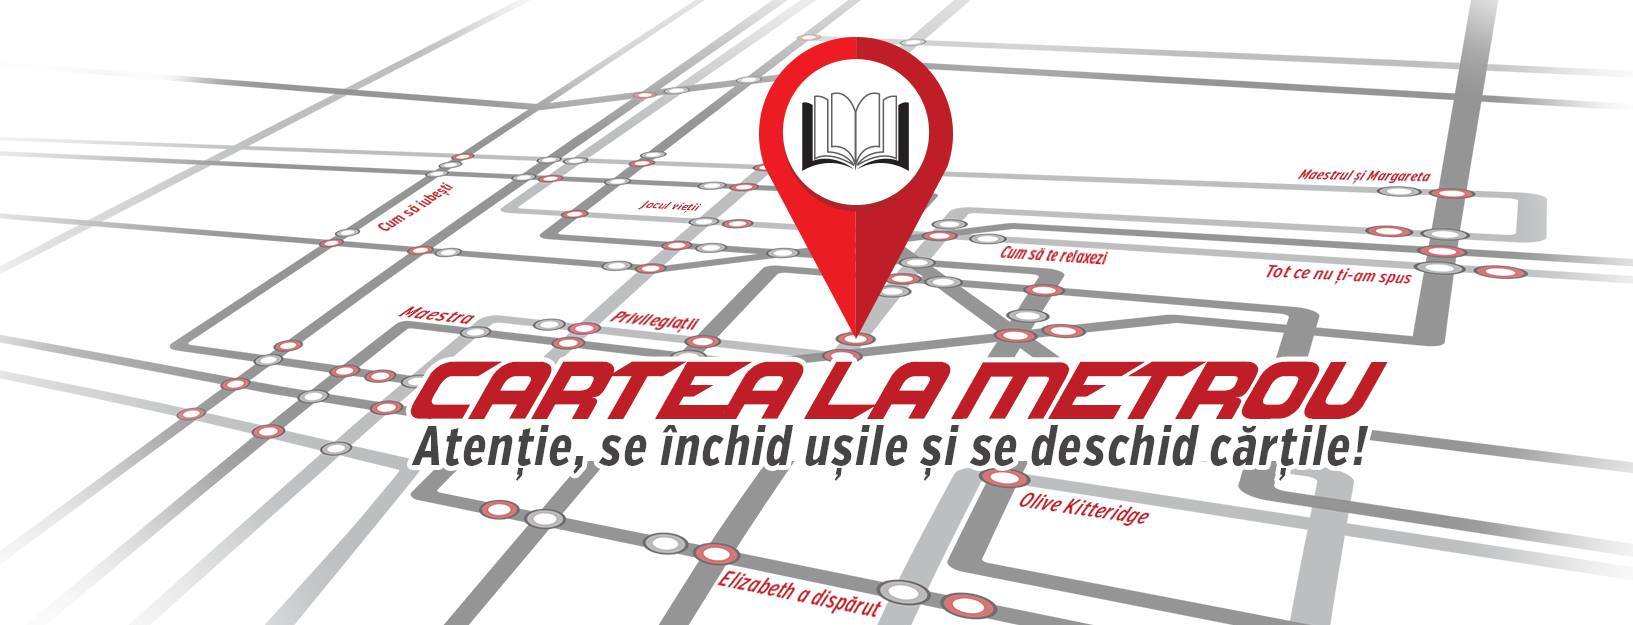 Cartea la metrou, o campanie de lectură realizată de Editura Litera